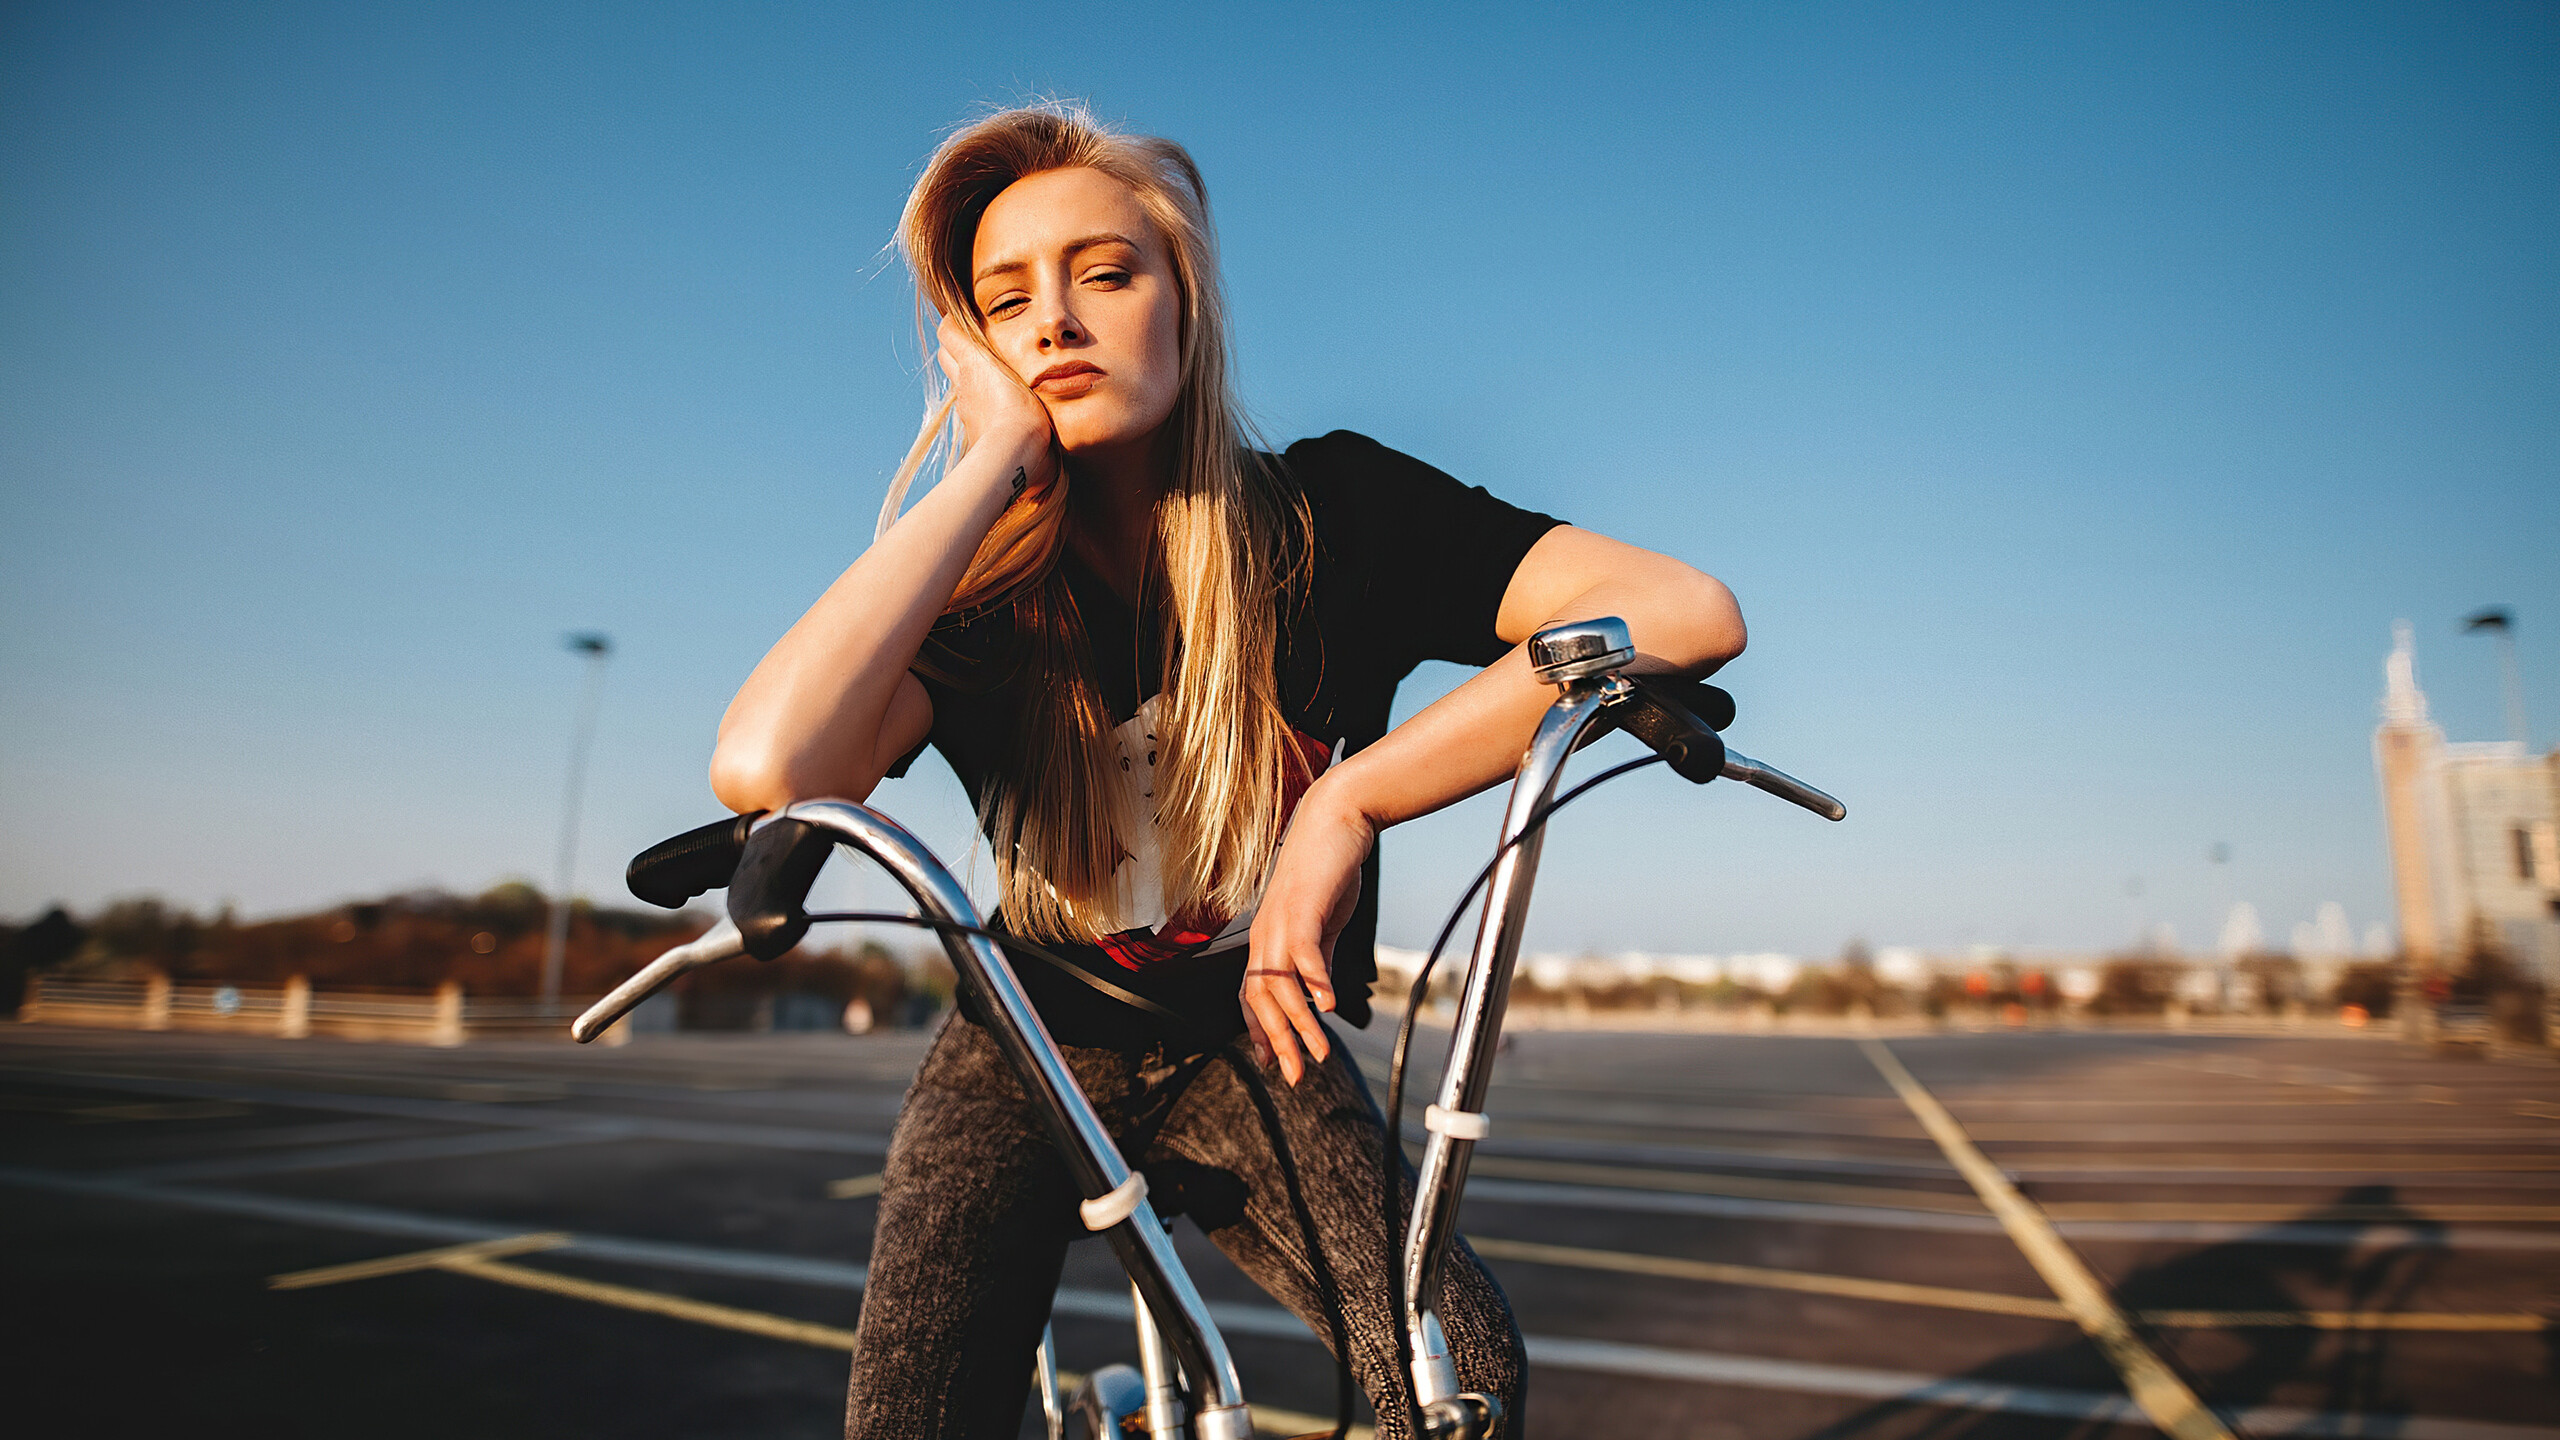 Girl and Bike: Bicycle handlebar, Brake levers, Urban cycling, Woman sitting on bike. 2560x1440 HD Background.